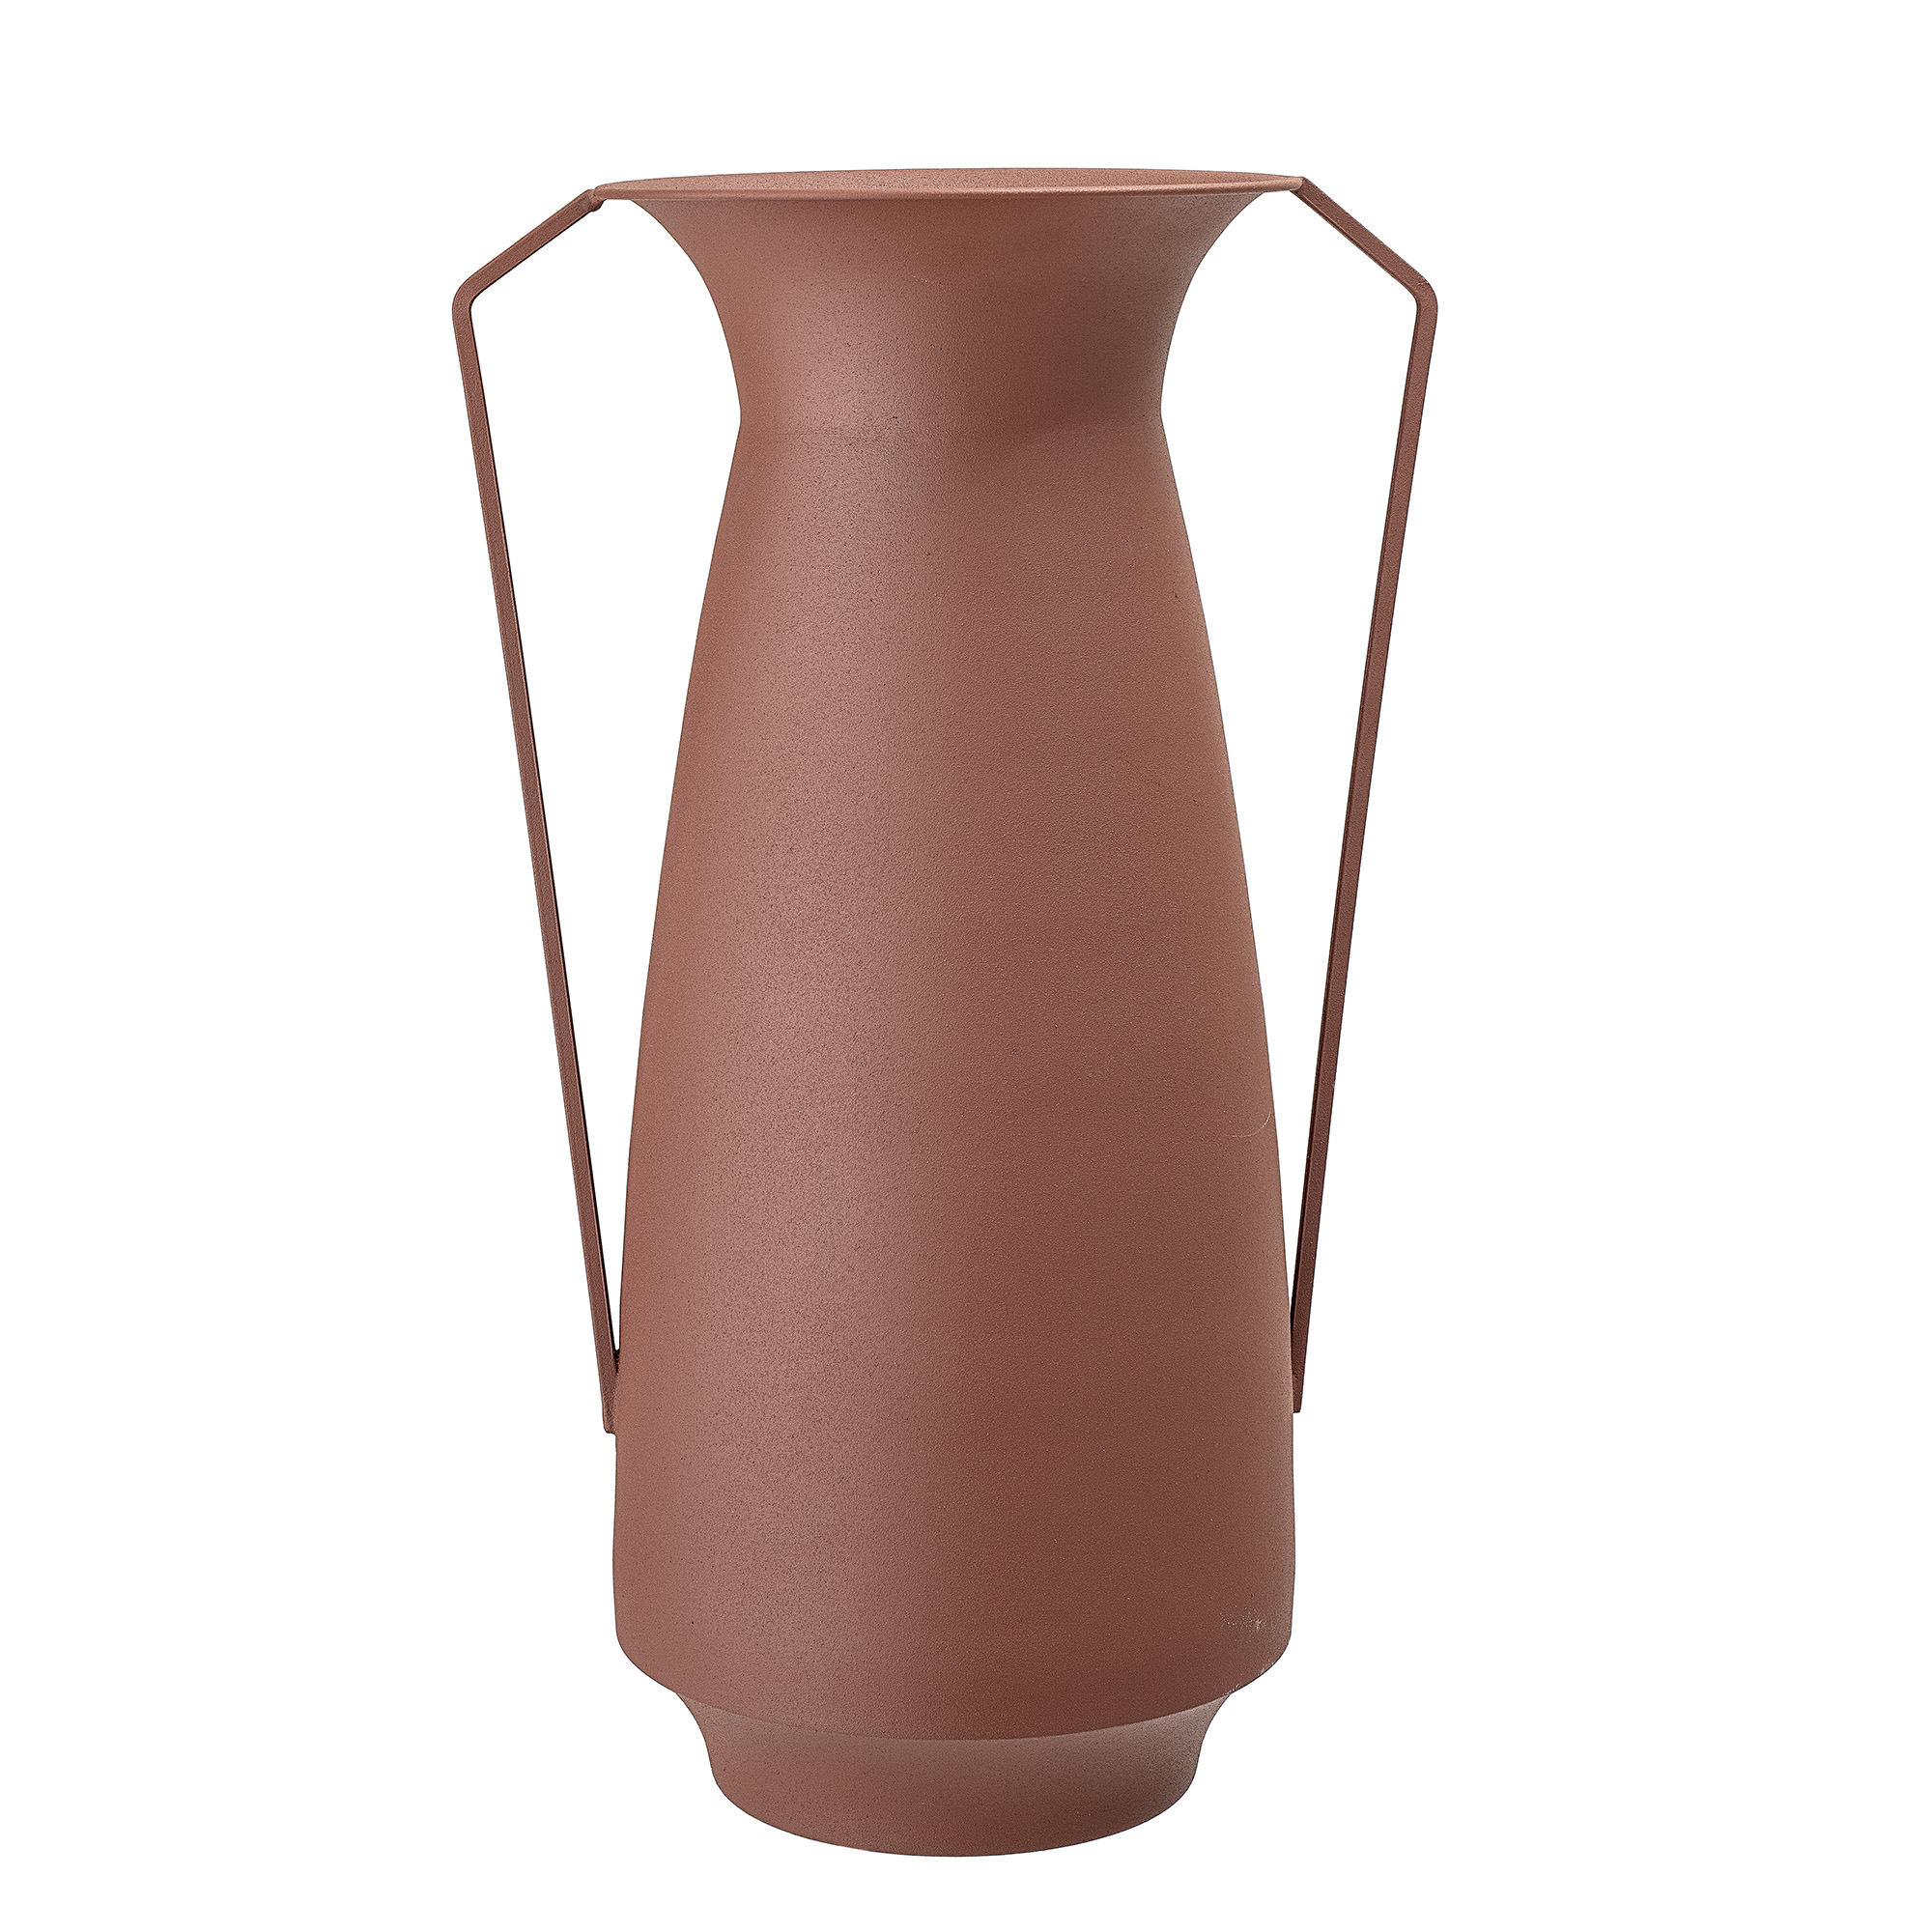  Metal Vase